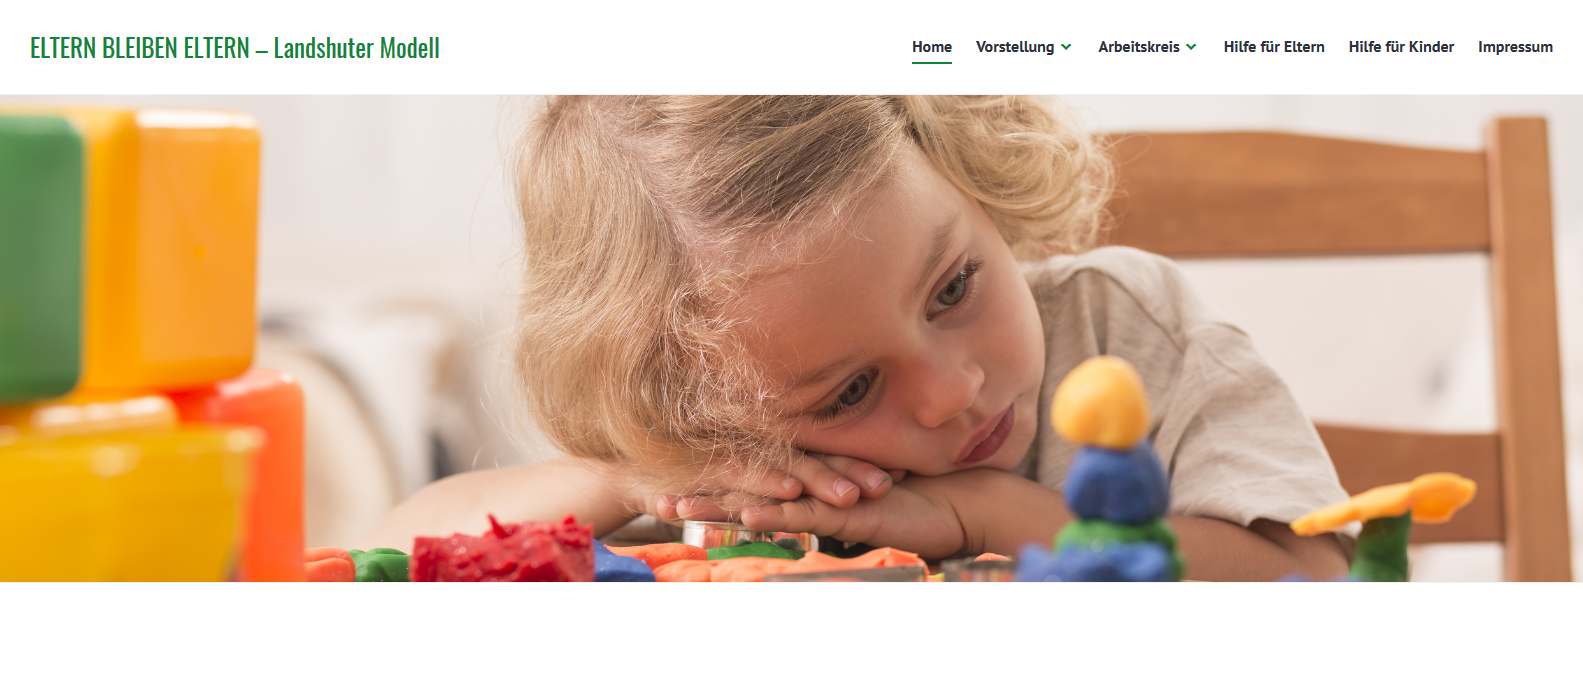 Titelseite der Homepage landshuter-modell.de